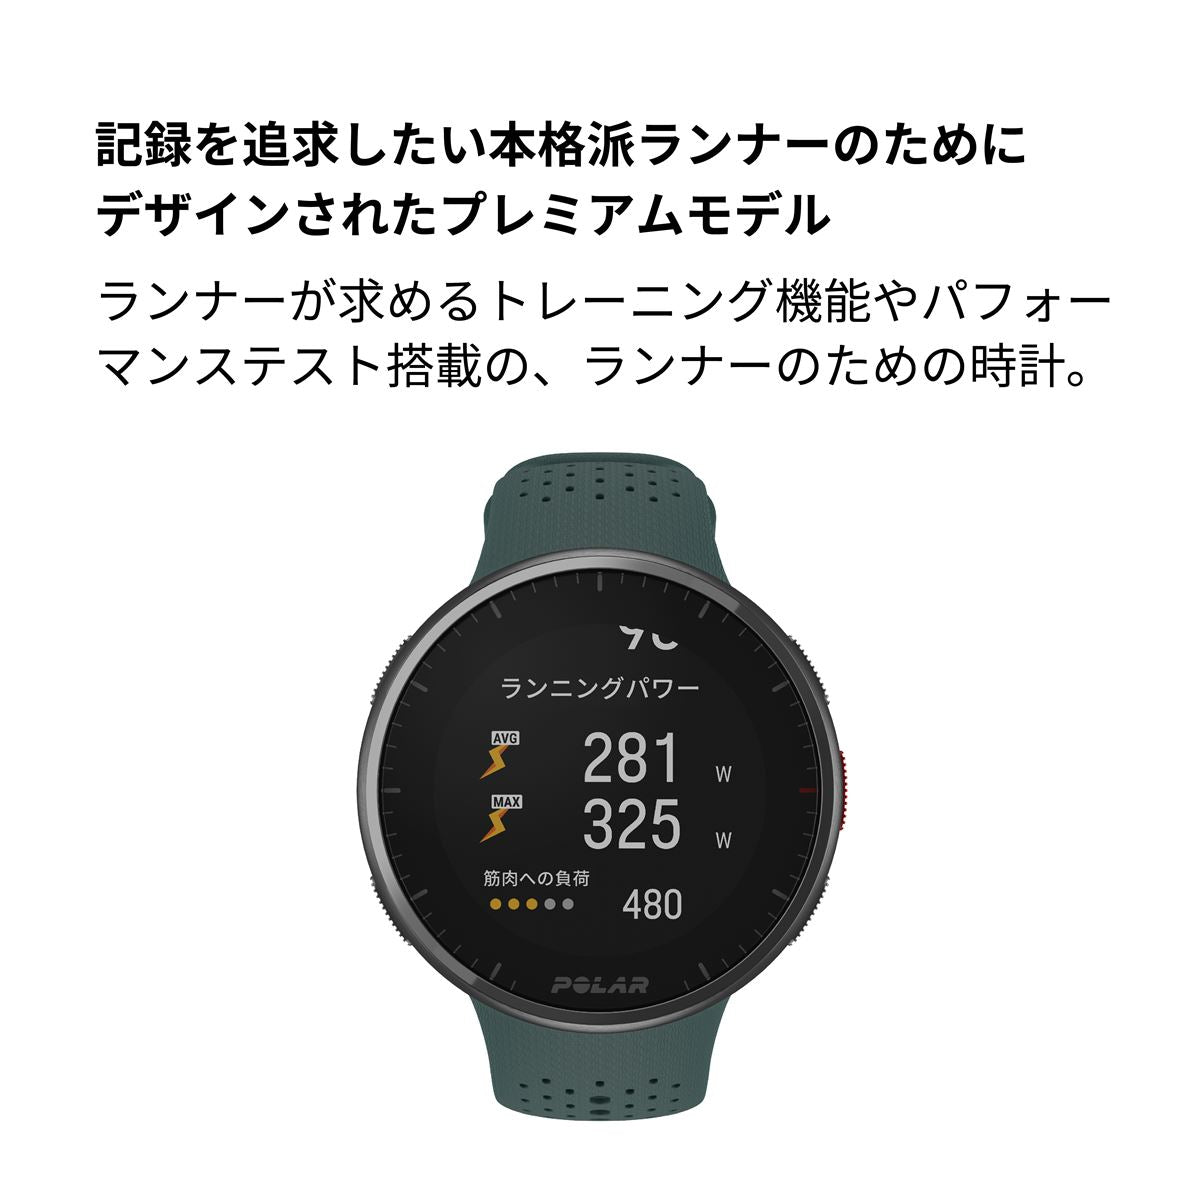 ポラール POLAR PACER PRO スマートウォッチ GPS 心拍 トレーニング ランニング マラソン 腕時計 ぺーサープロ オーロラグリーン S-L 900102183 日本正規品